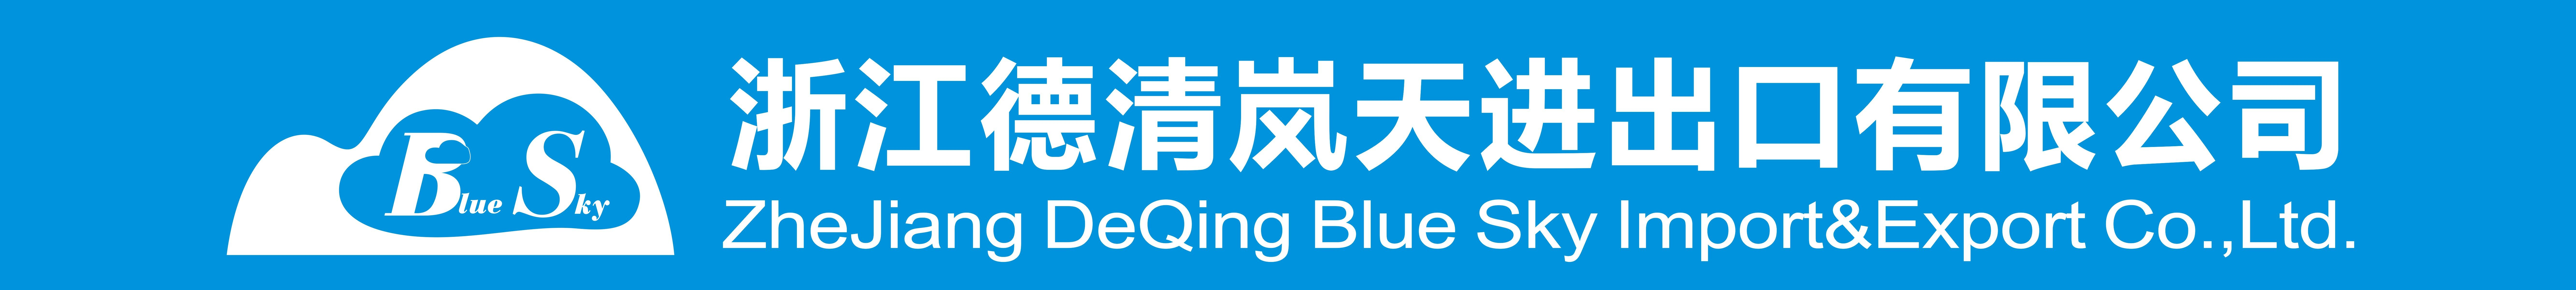 DE QING BLUE SKY IMPORT AND EXPORT CO., LTD